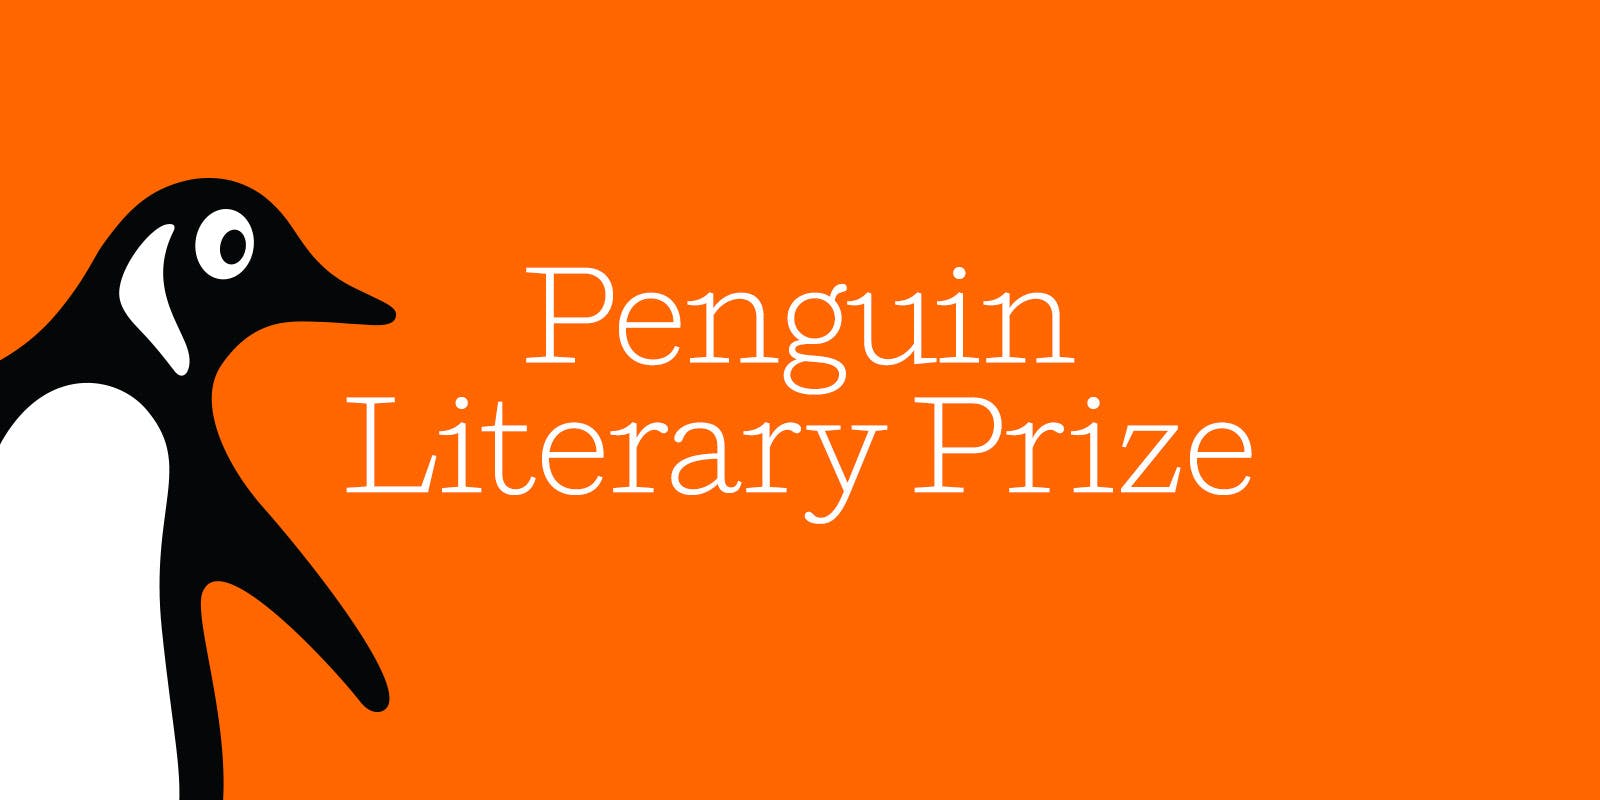 Penguin Literary Prize shortlist announcement